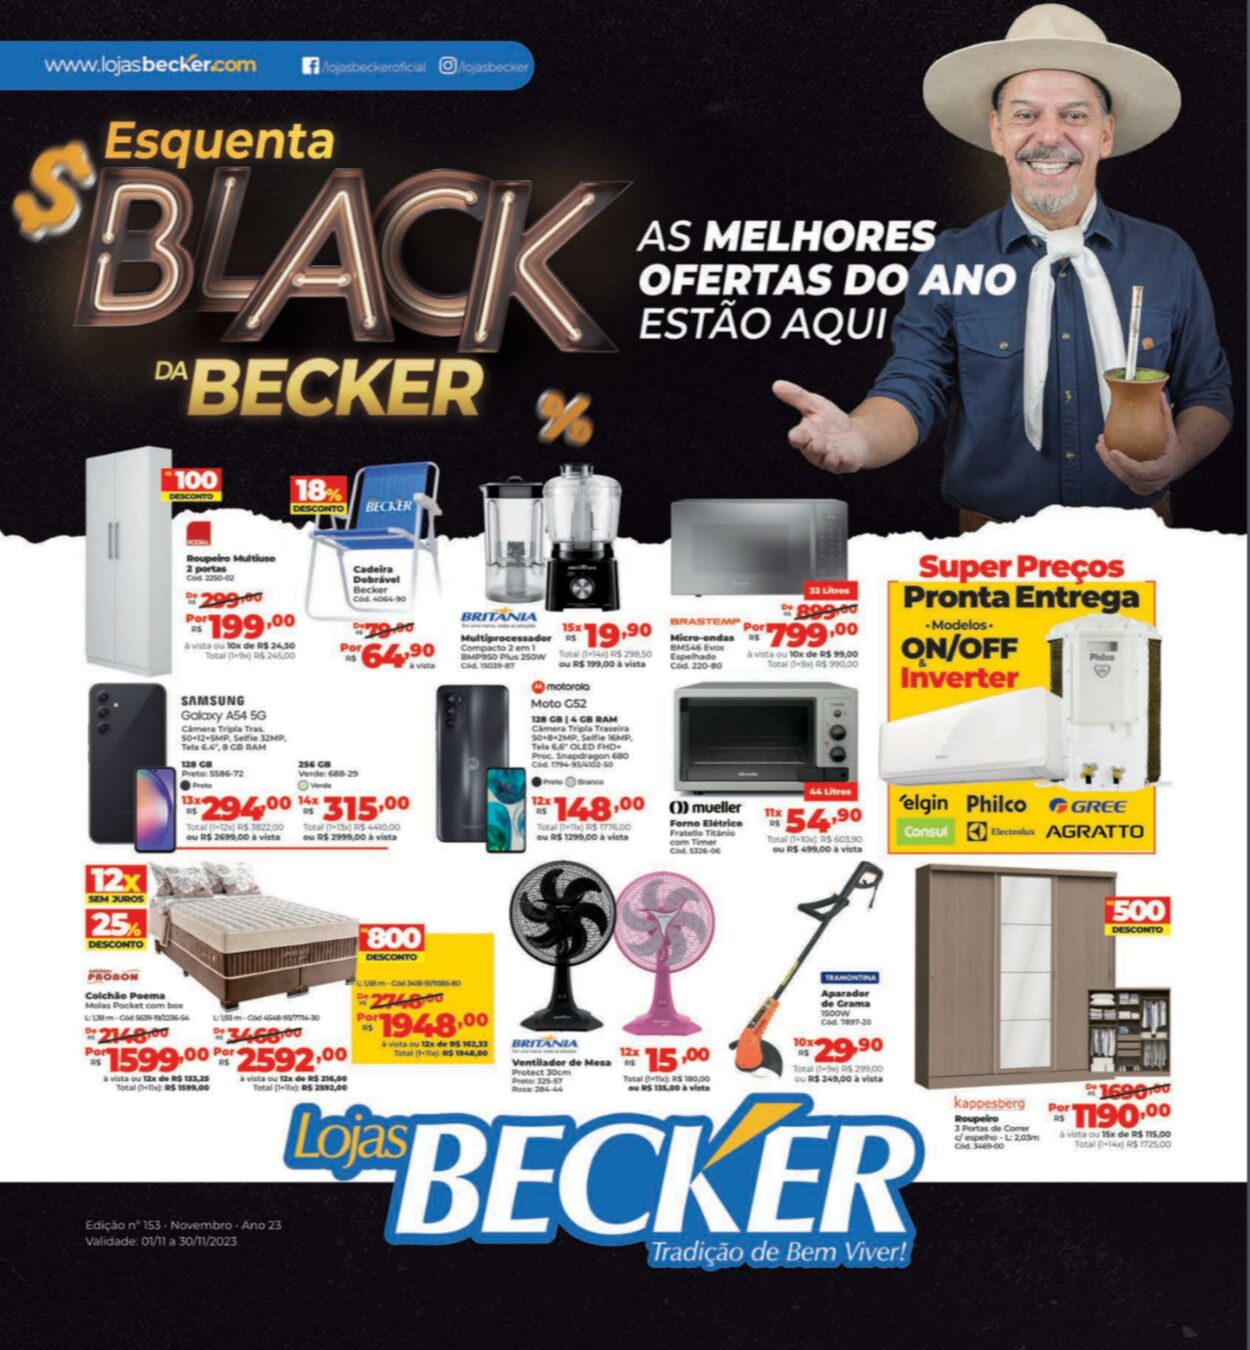 Lojas Becker Folhetos promocionais